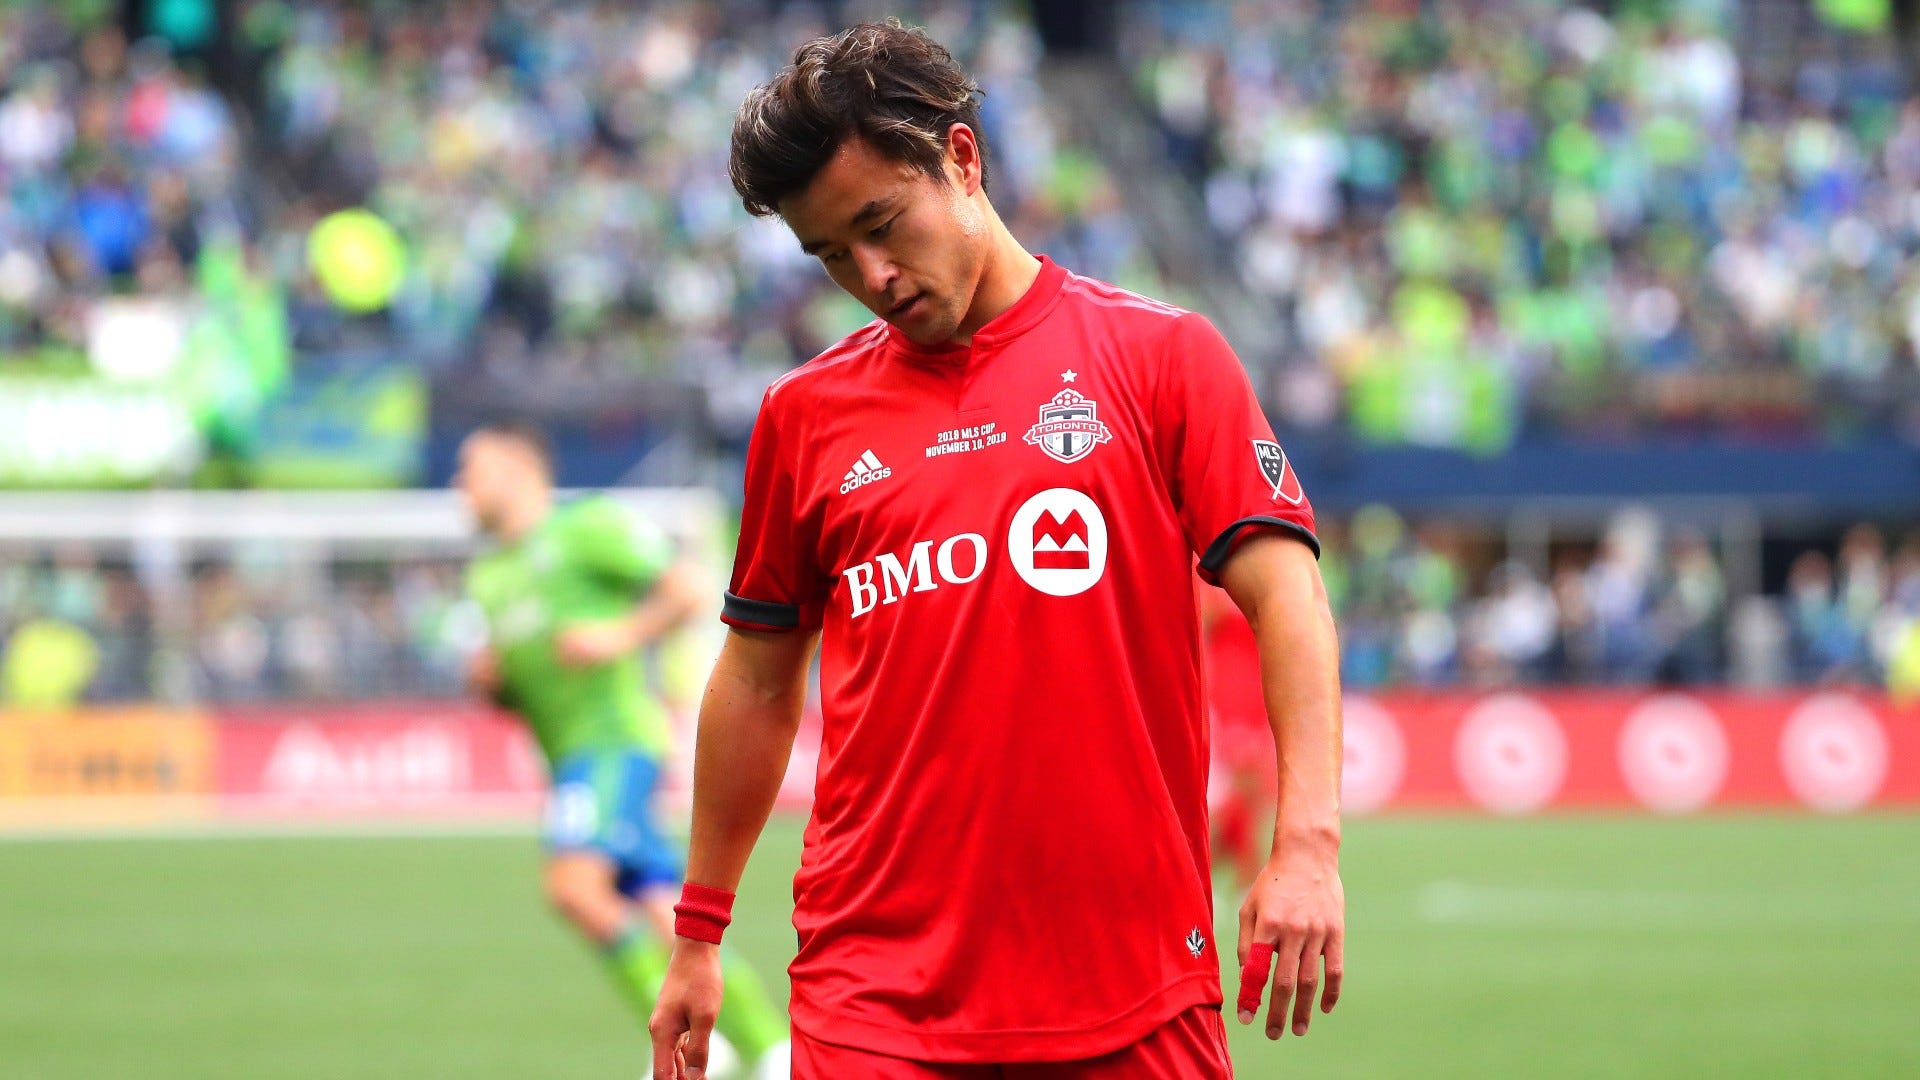 Toronto has announced that former midfielder Tsubasa Endo has leukemia